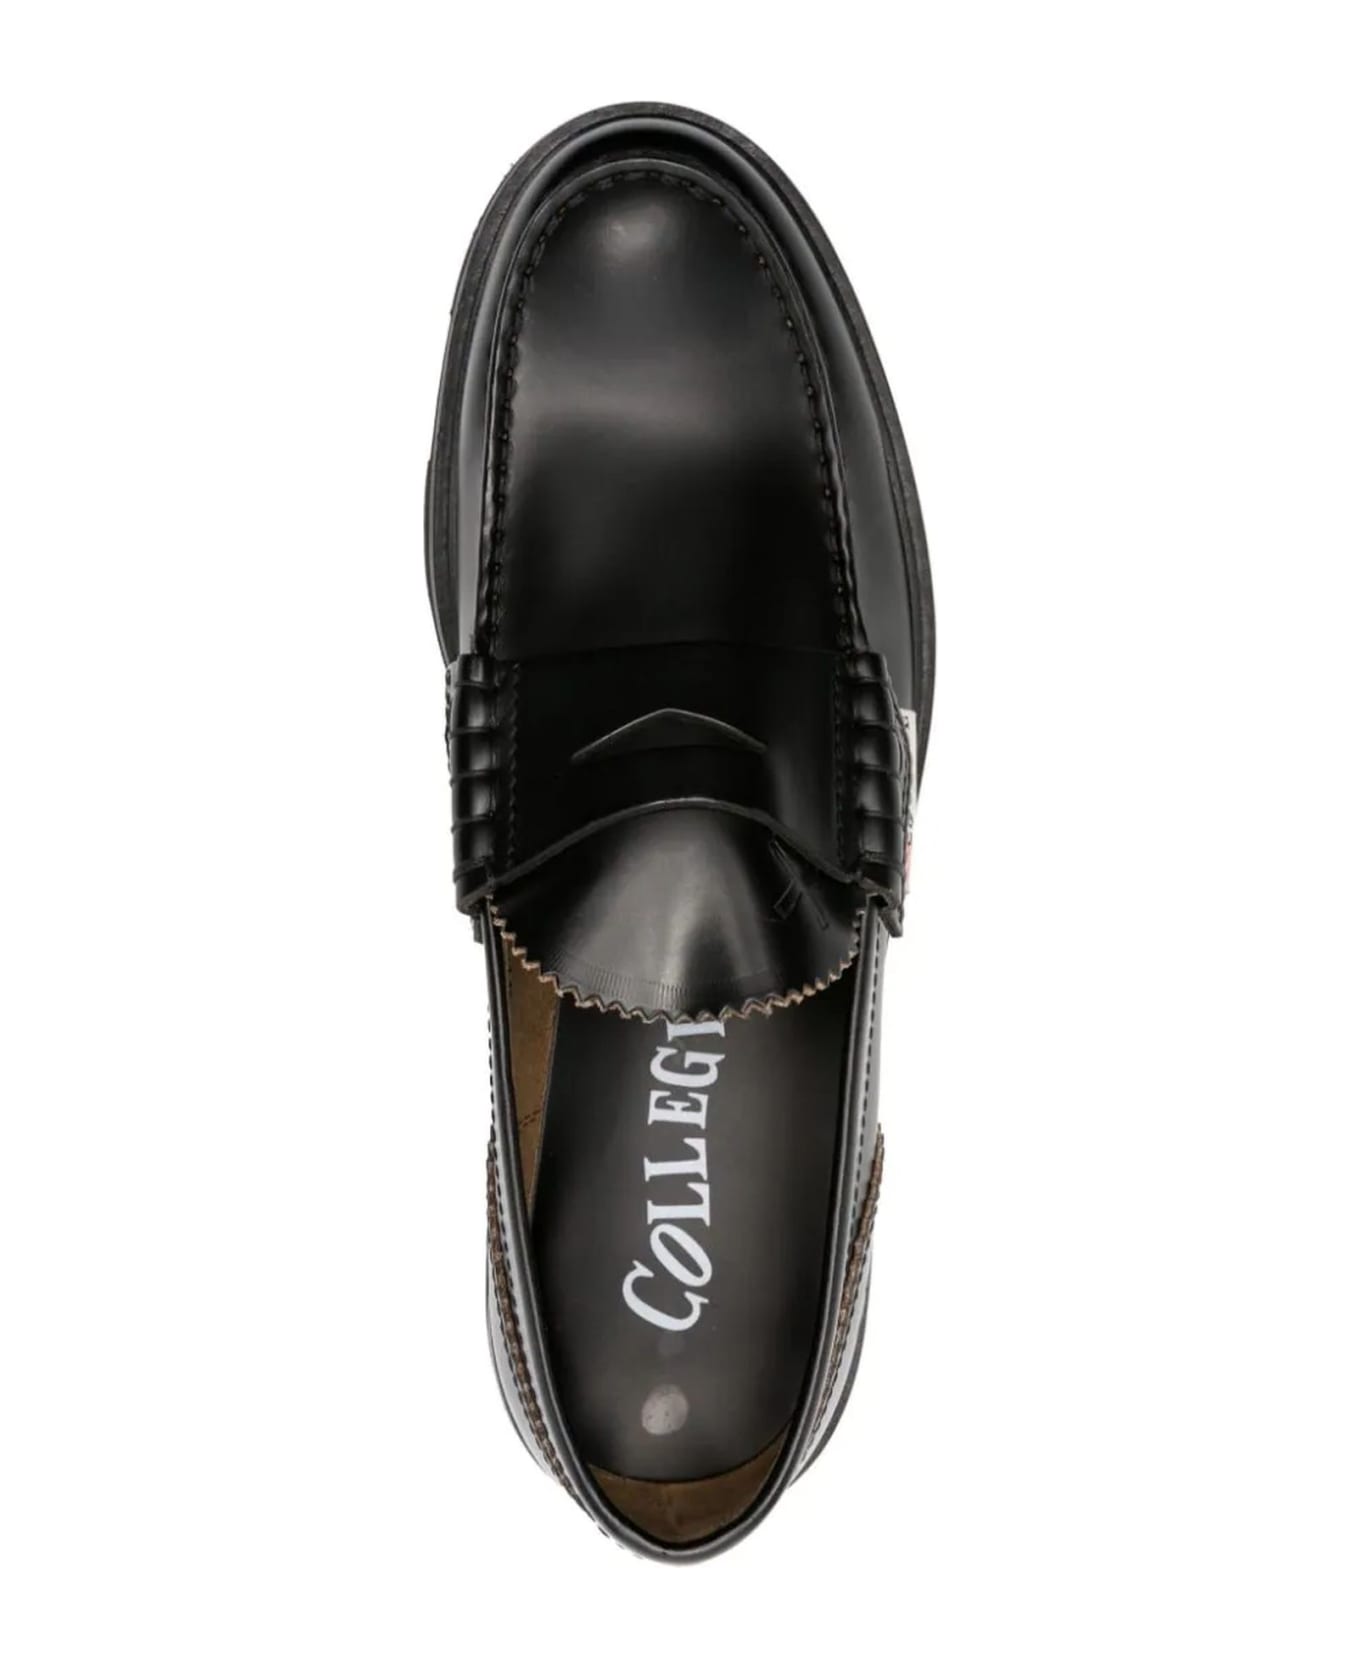 College Black Calf Leather Loafers - Nero